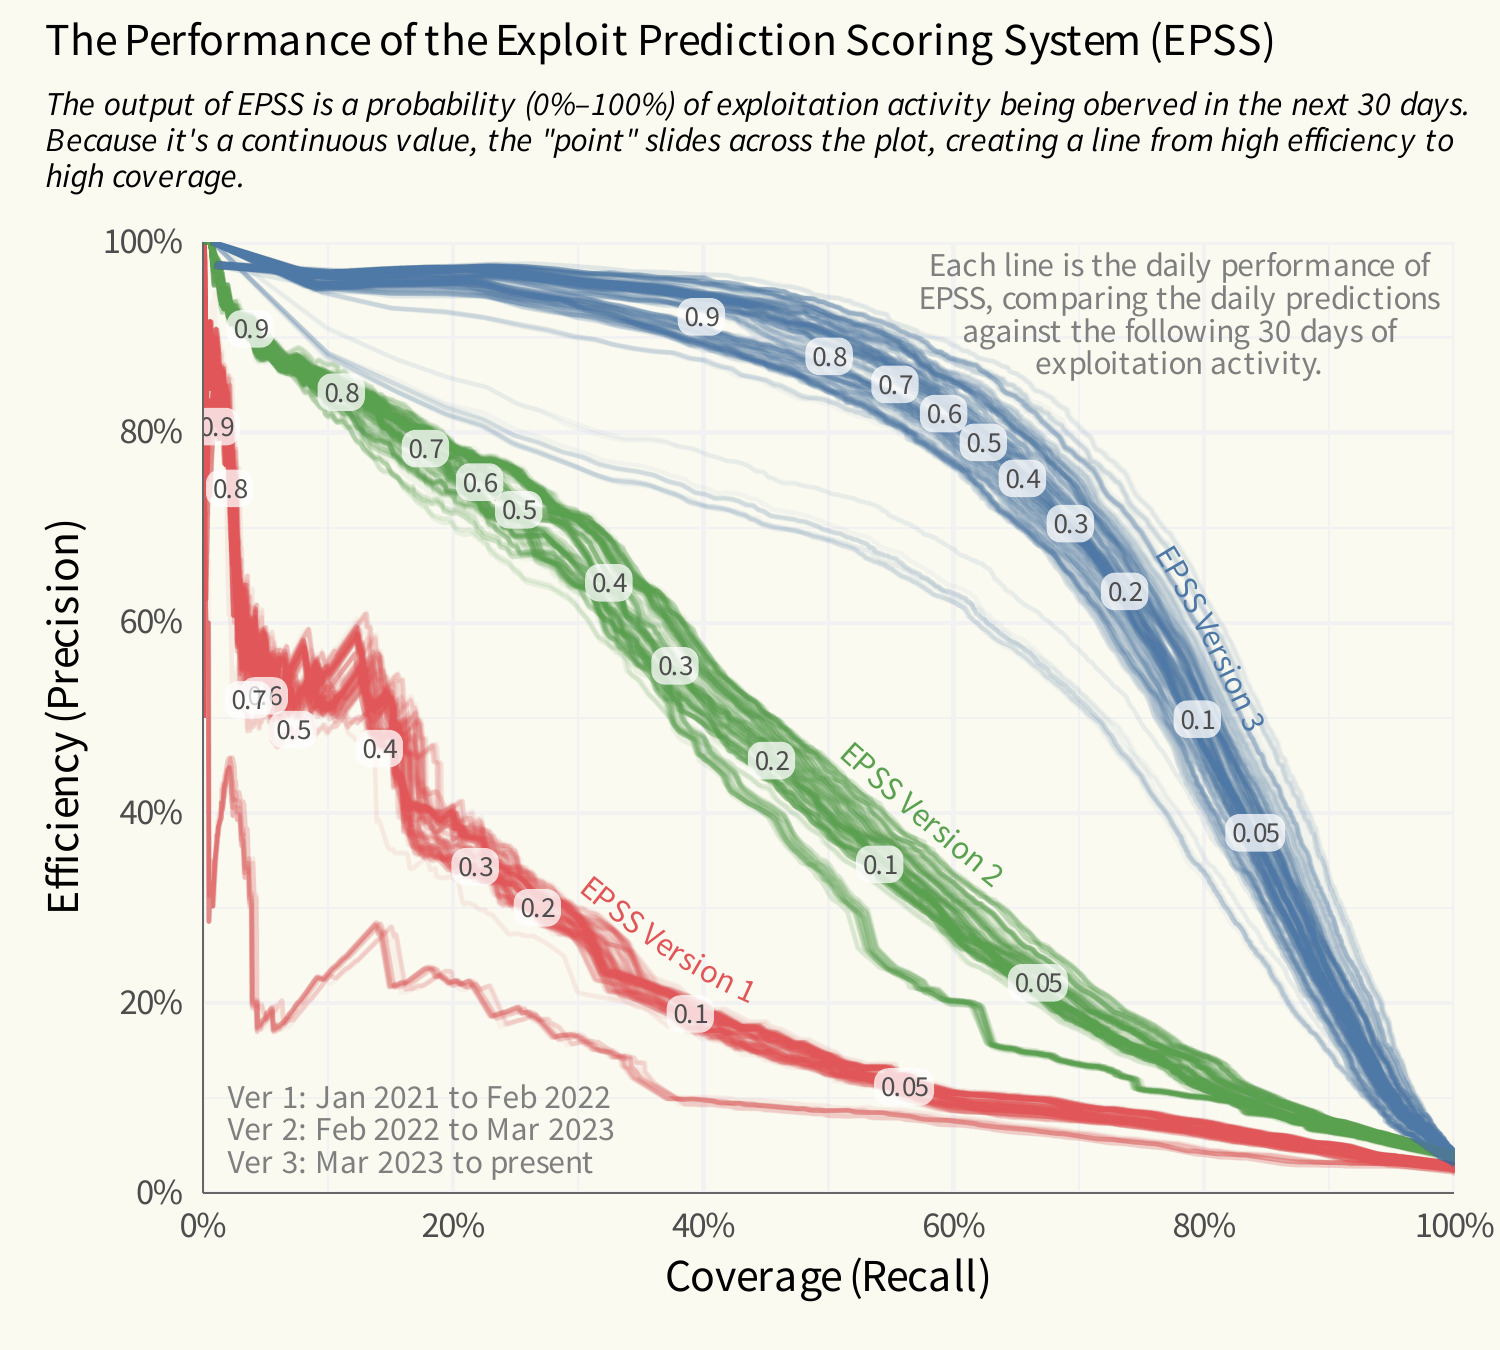 Die Grafik zeigt die Performance von EPSS (Exploit Prediction Scoring System)